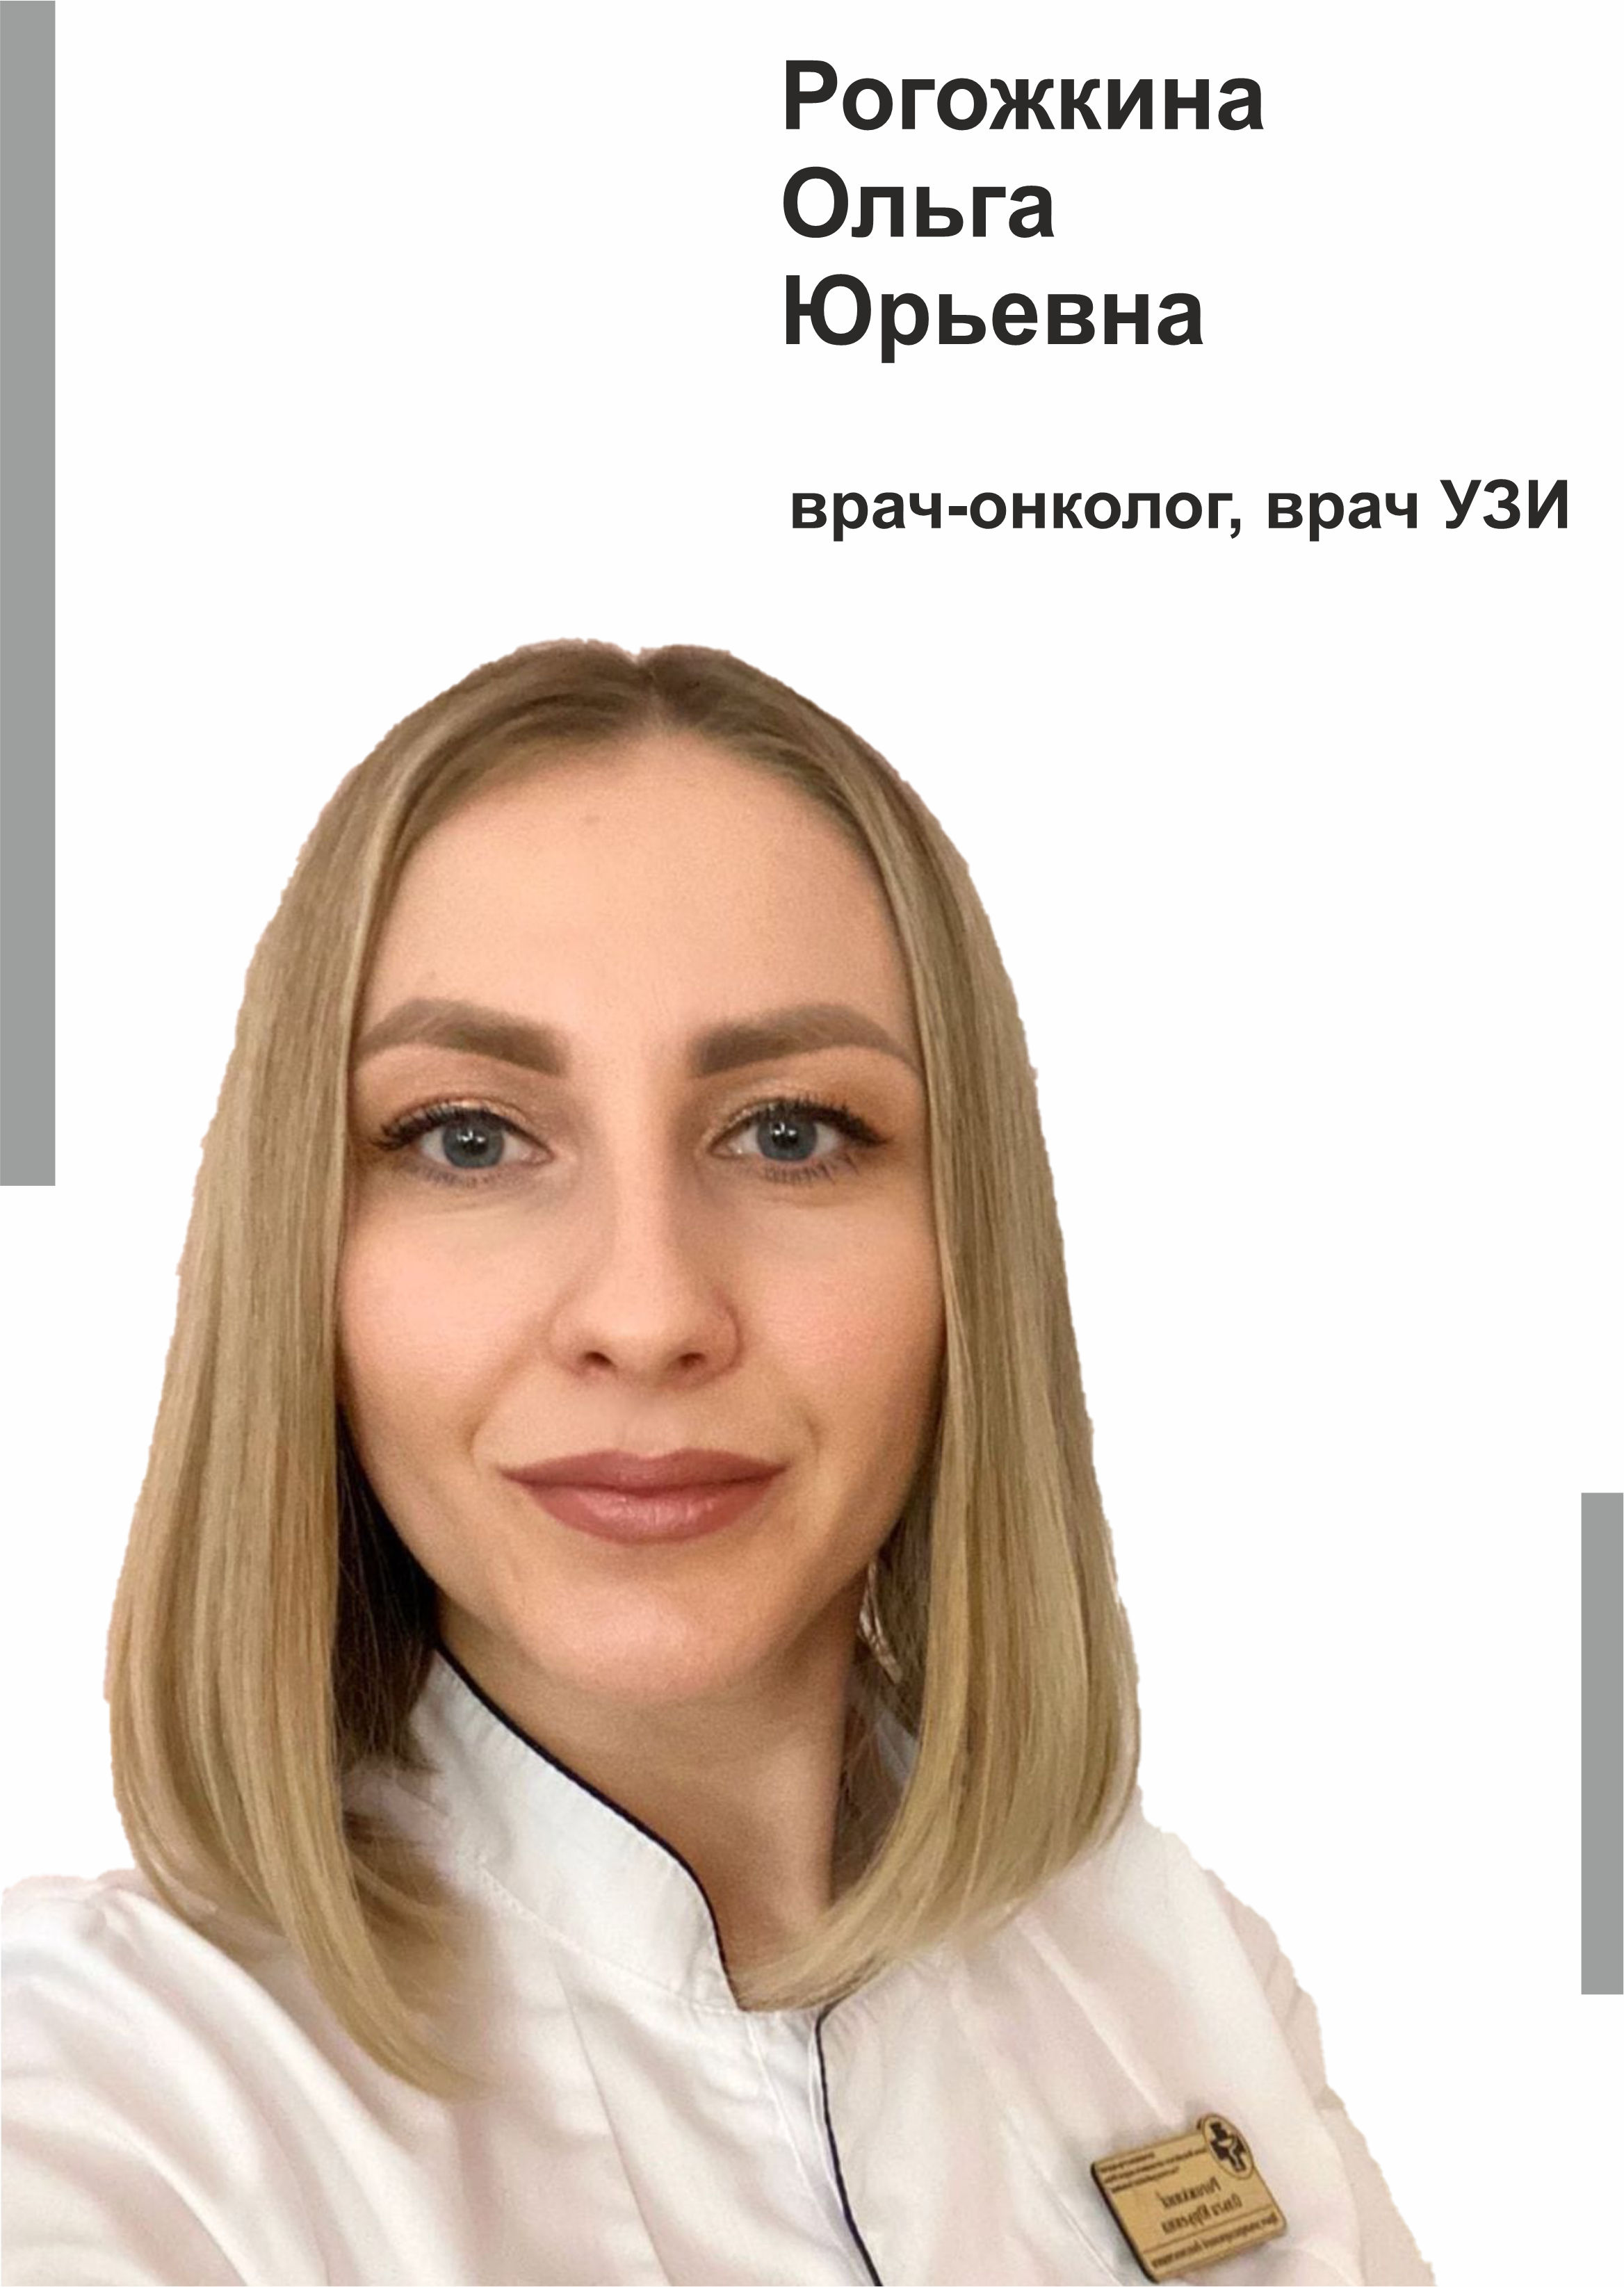 Рогожкина Ольга Юрьевна - Врач узи, онколог в клинике Lezaffe г. Югорск